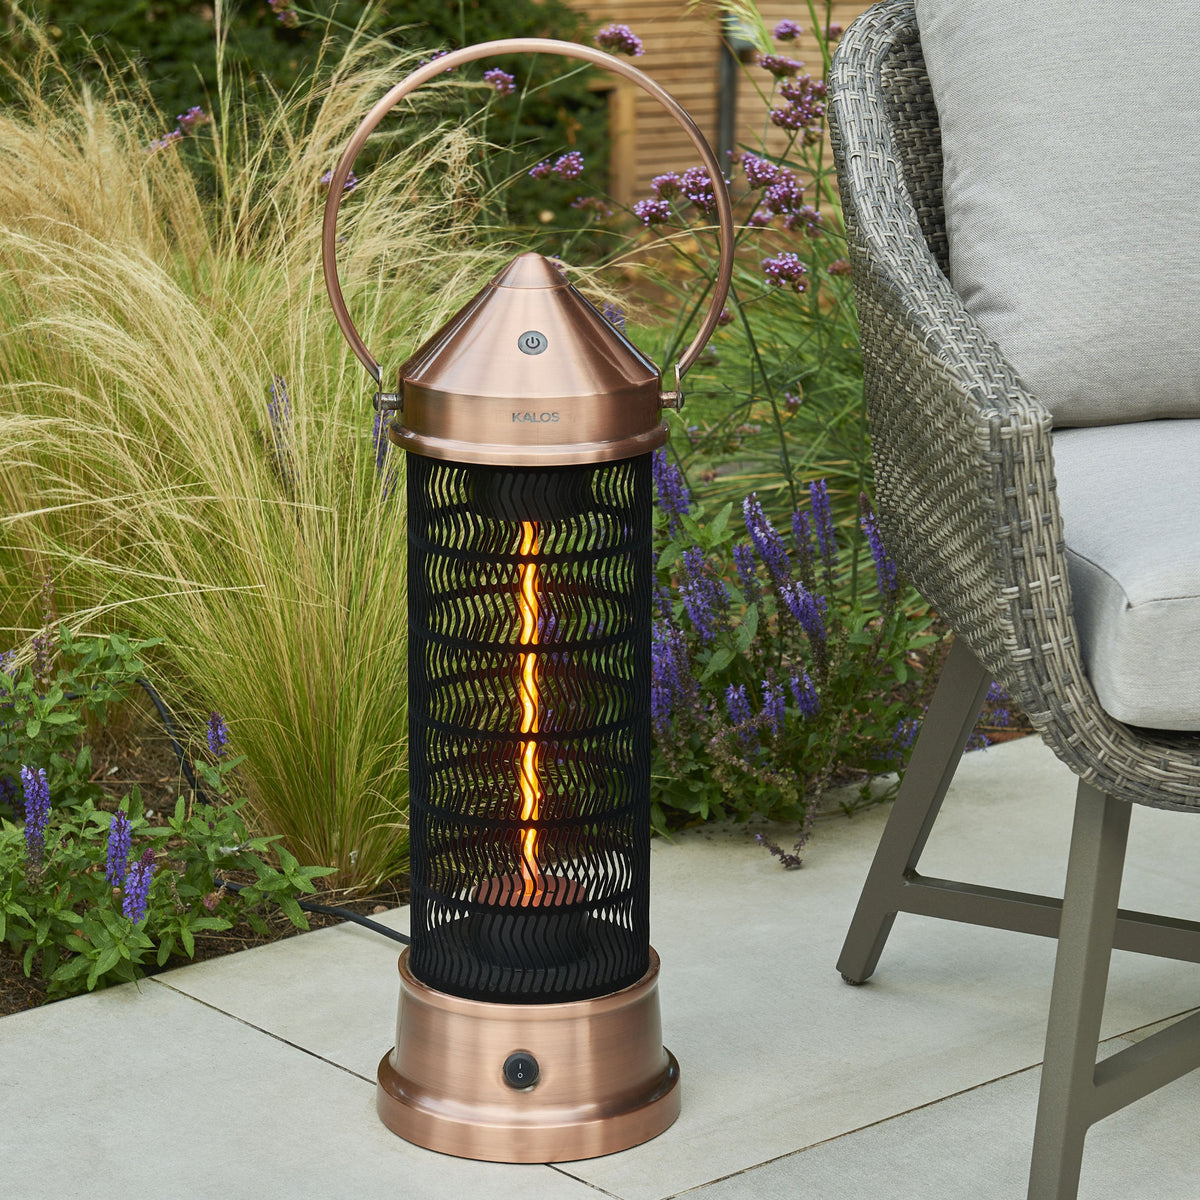 Kettler Kalos Copper Outdoor Heating Lantern (Small)